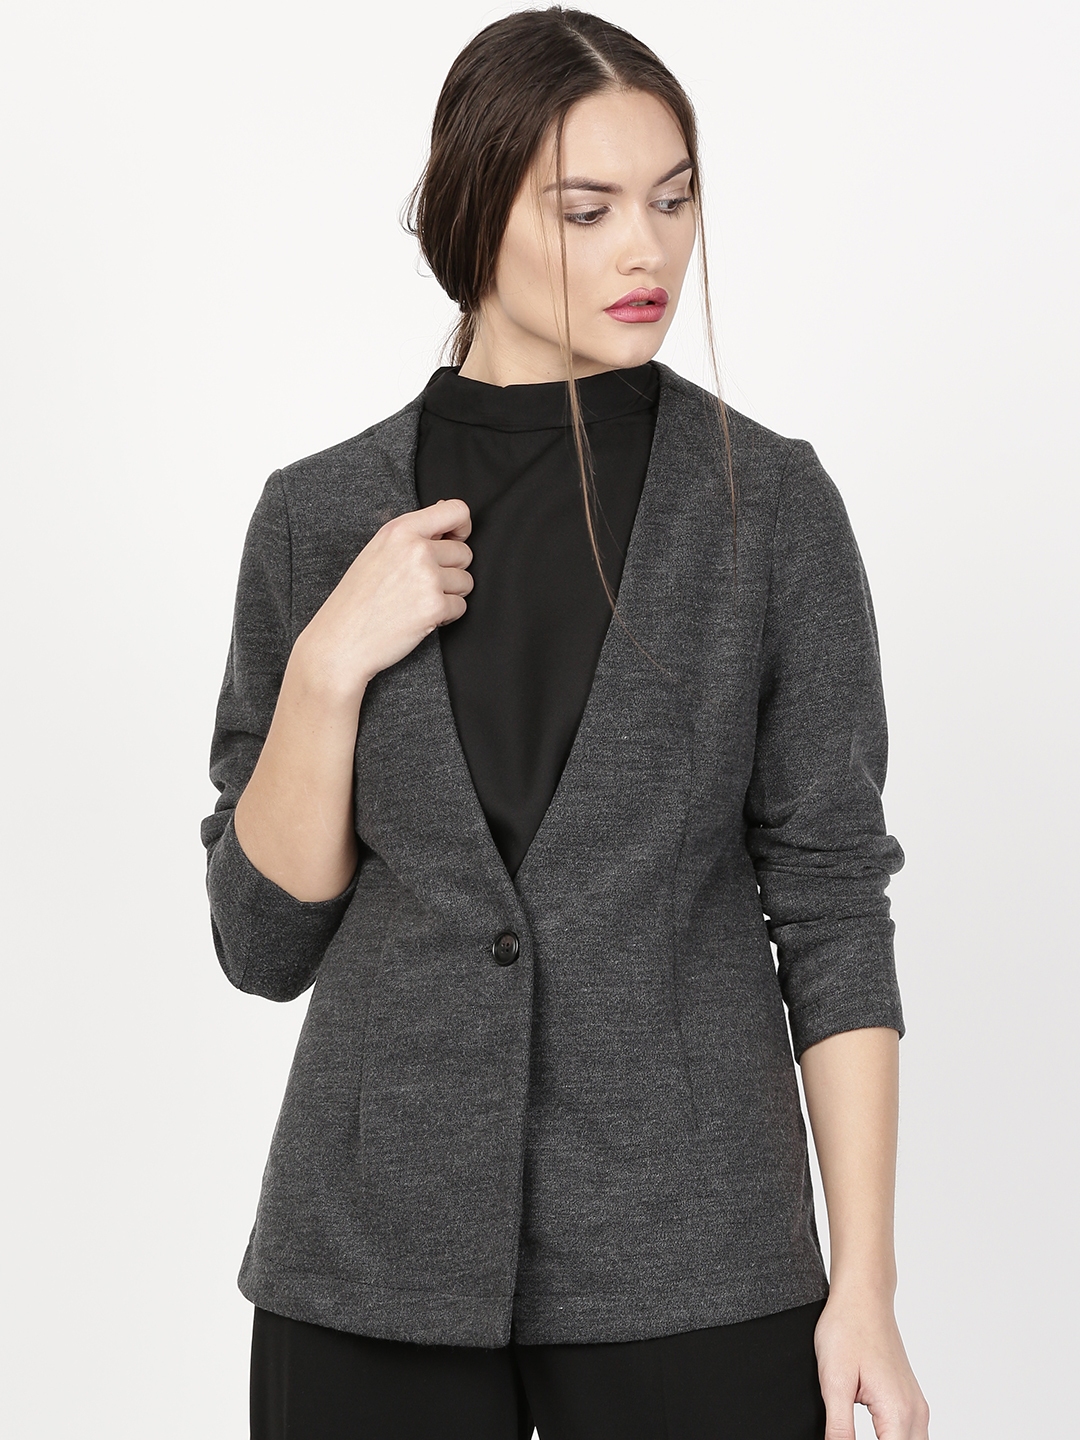 Buy Ether Charcoal Grey Casual Blazer - Blazers for Women 1854910 | Myntra